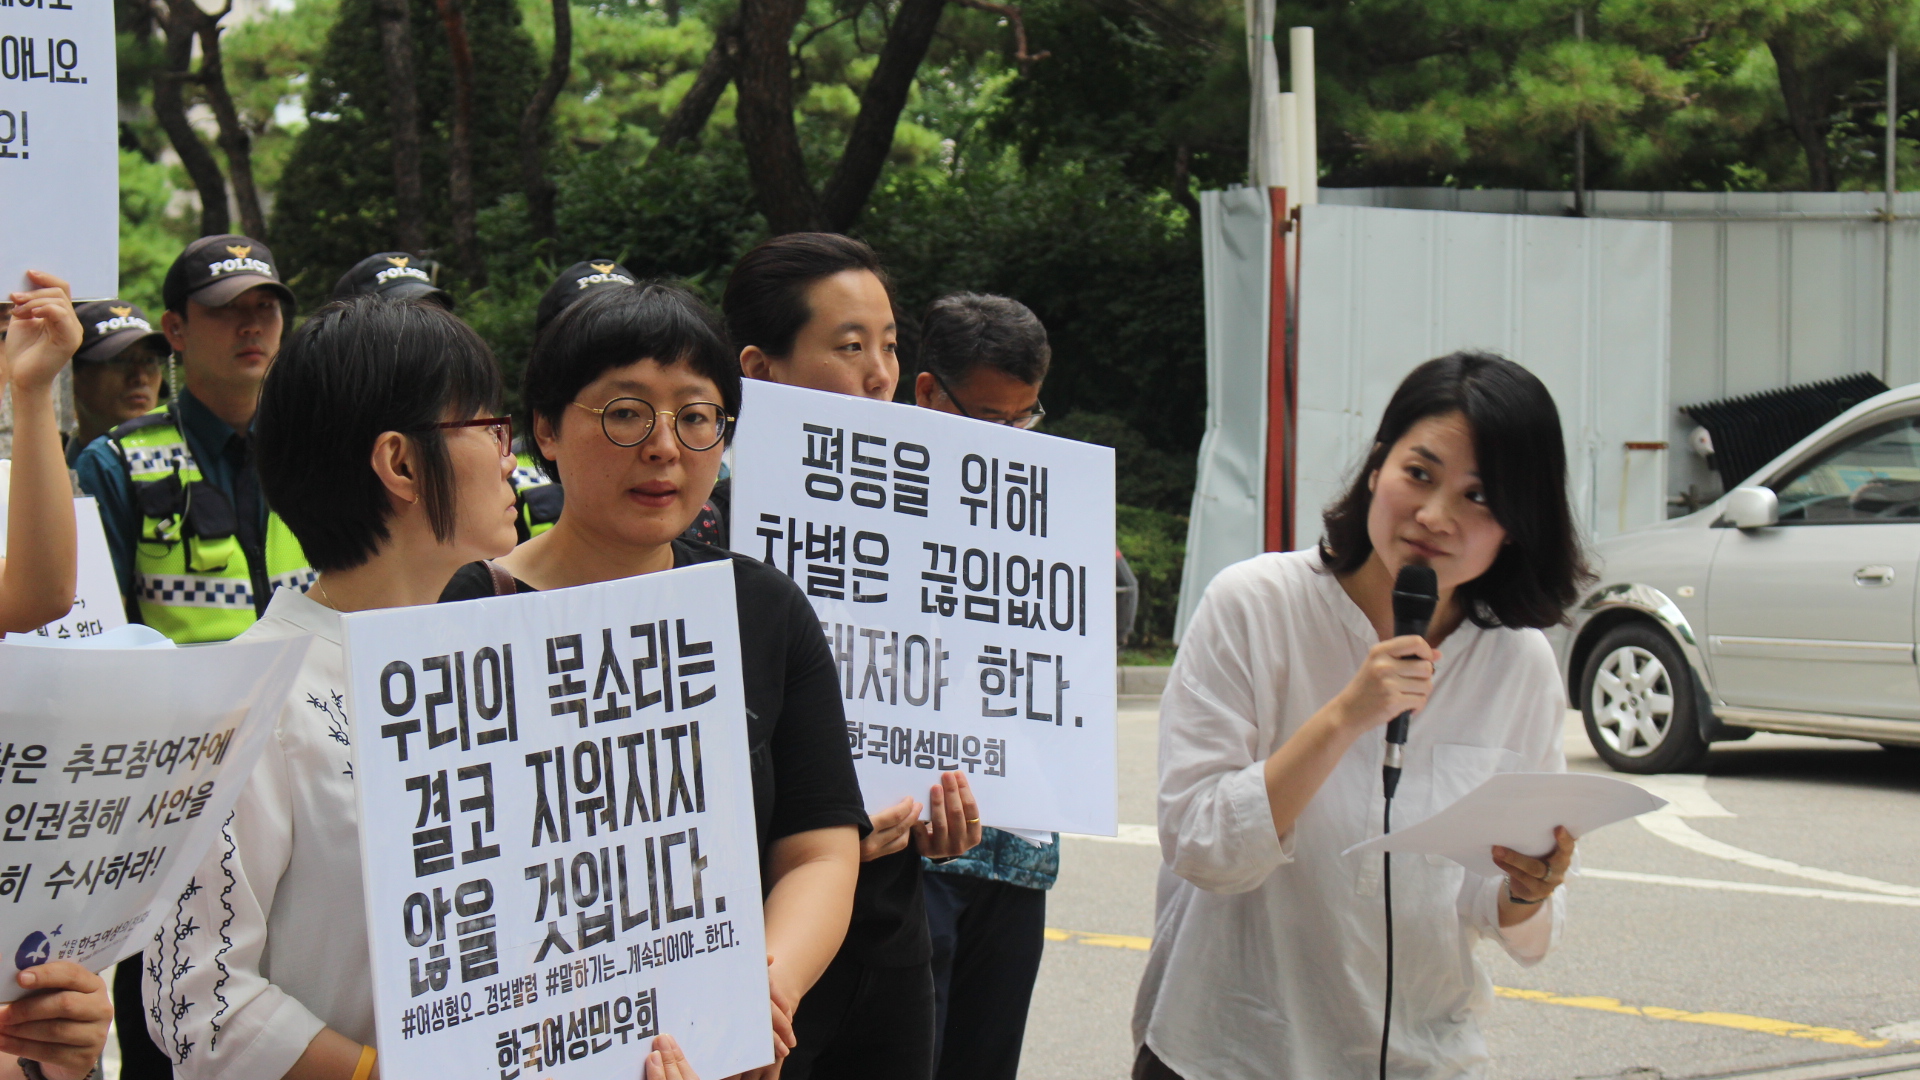 강남역 추모참여자 인권침해 집단소송 - 변화를 위한 행동은 계속된다